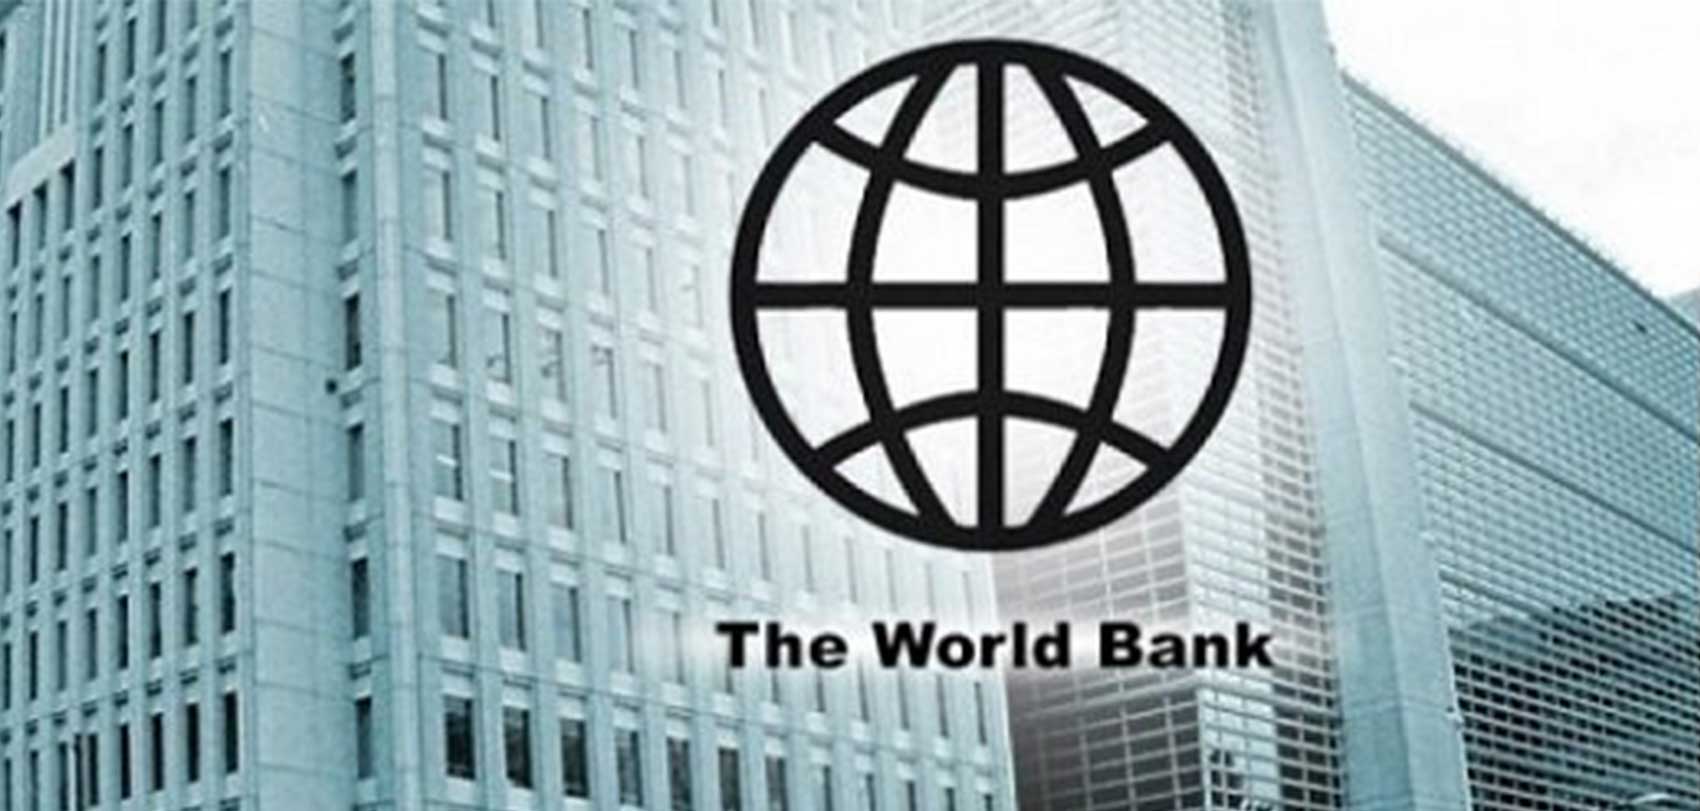 नेपालको आर्थिक वृद्धिदर ३.९ प्रतिशतमा सीमित रहने विश्व बैंकको प्रक्षेपण